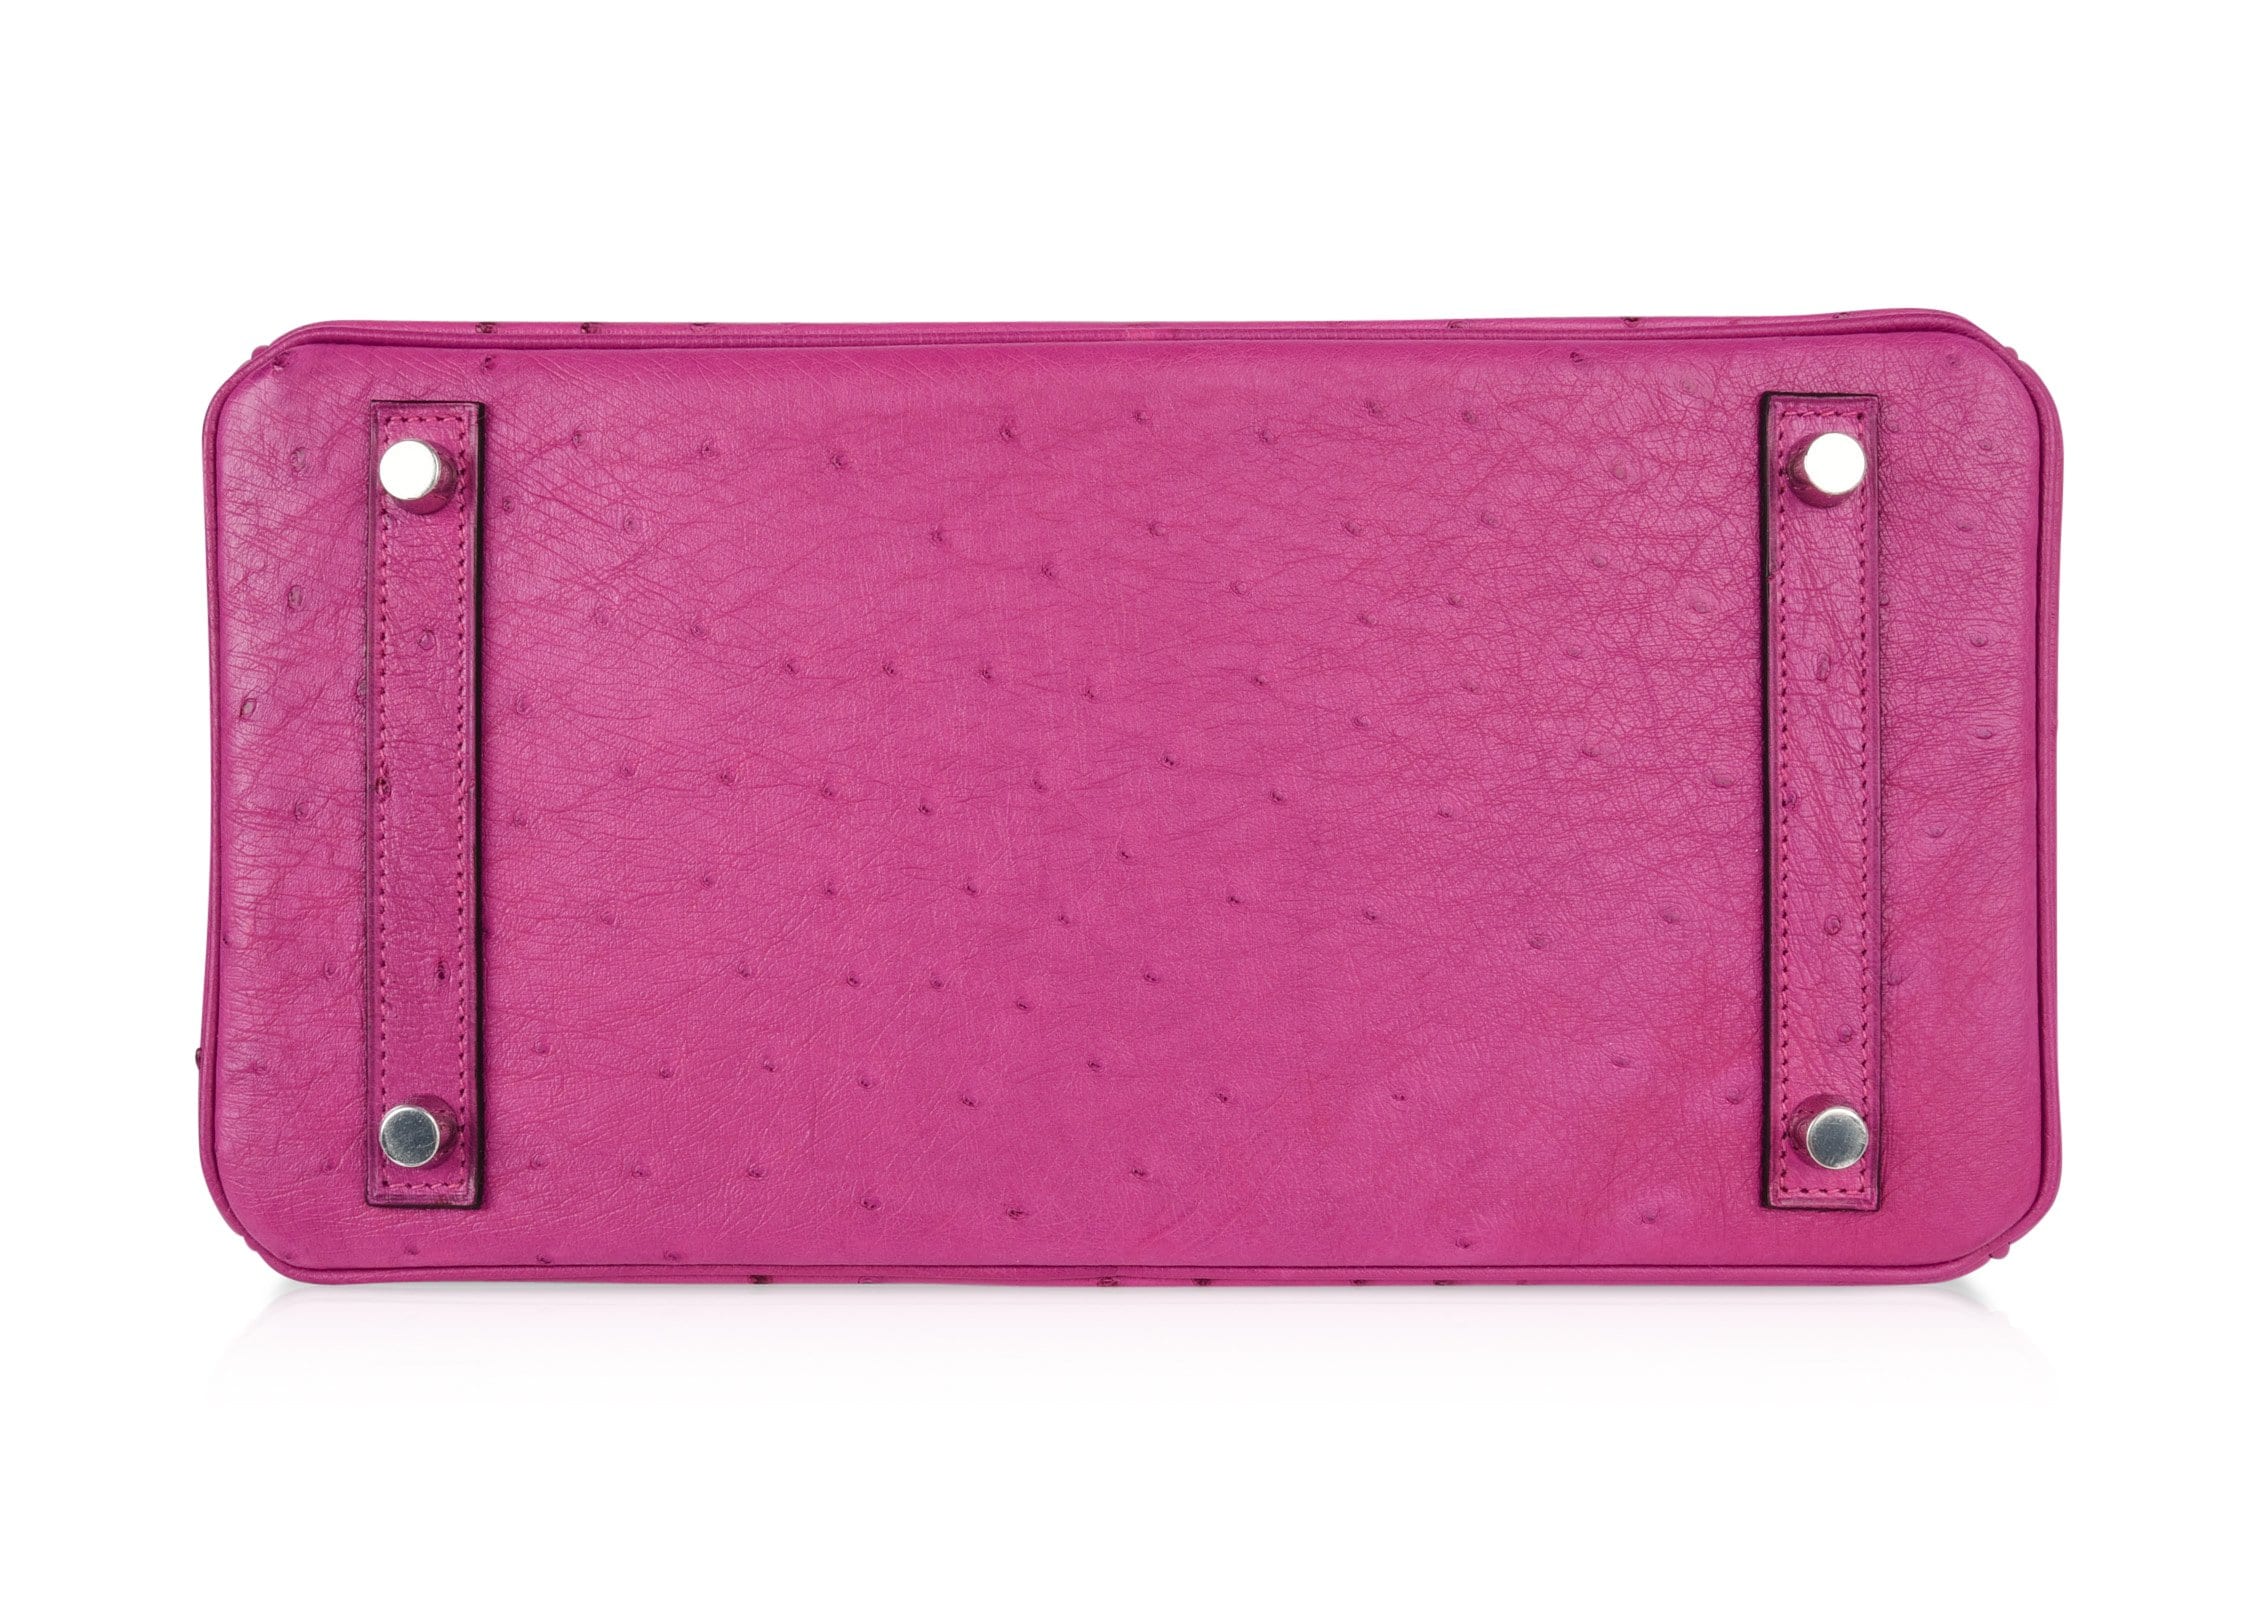 Hermes Birkin 30 Bag Rose Poupre Pink Ostrich Palladium Hardware - mightychic